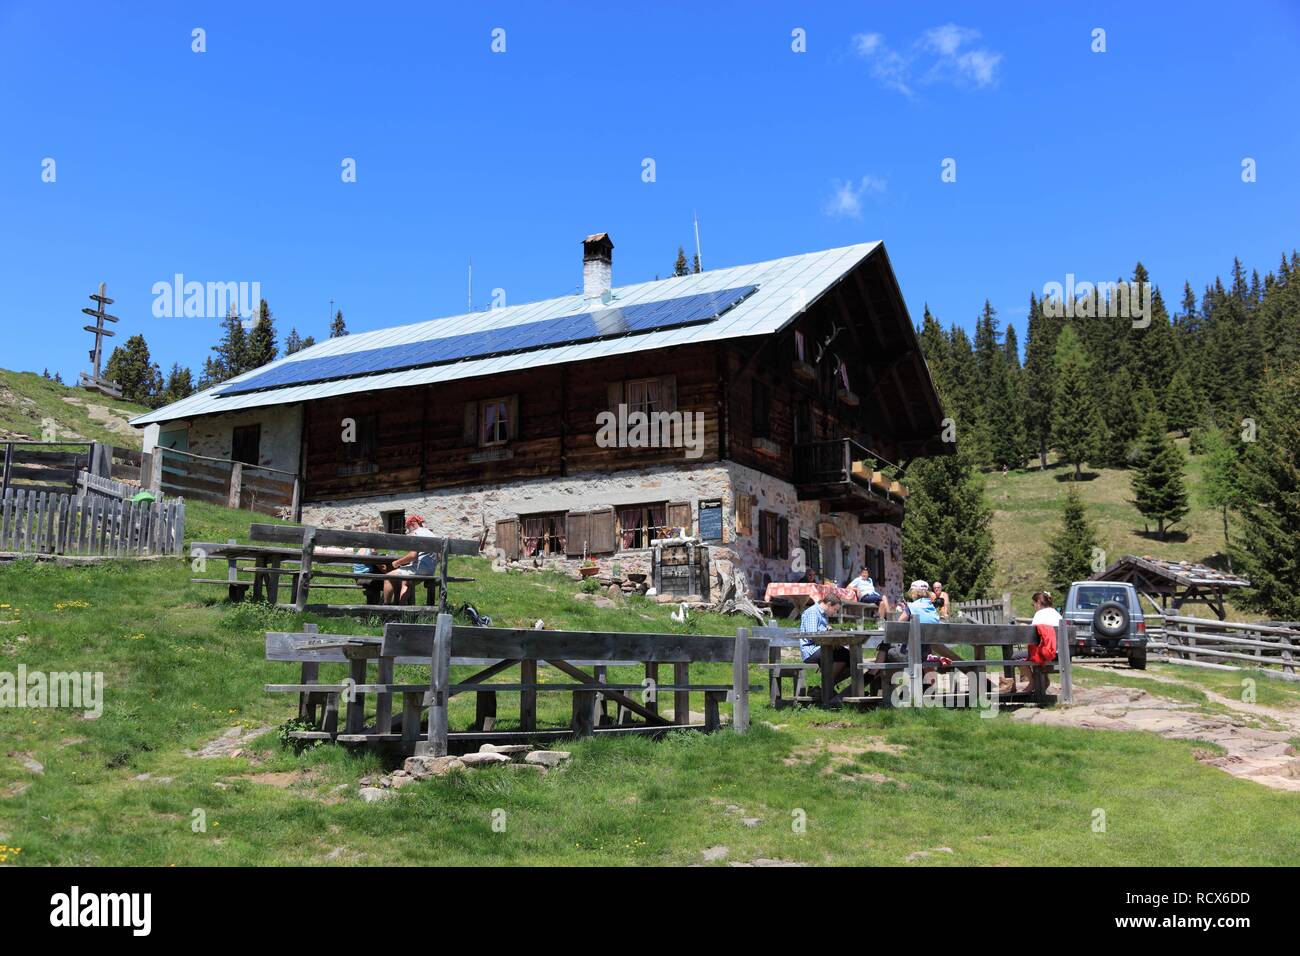 Hütte auf dem Kirchsteiger Alm Alm in der Nähe von Meran, Südtirol, Italien, Europa Stockfoto